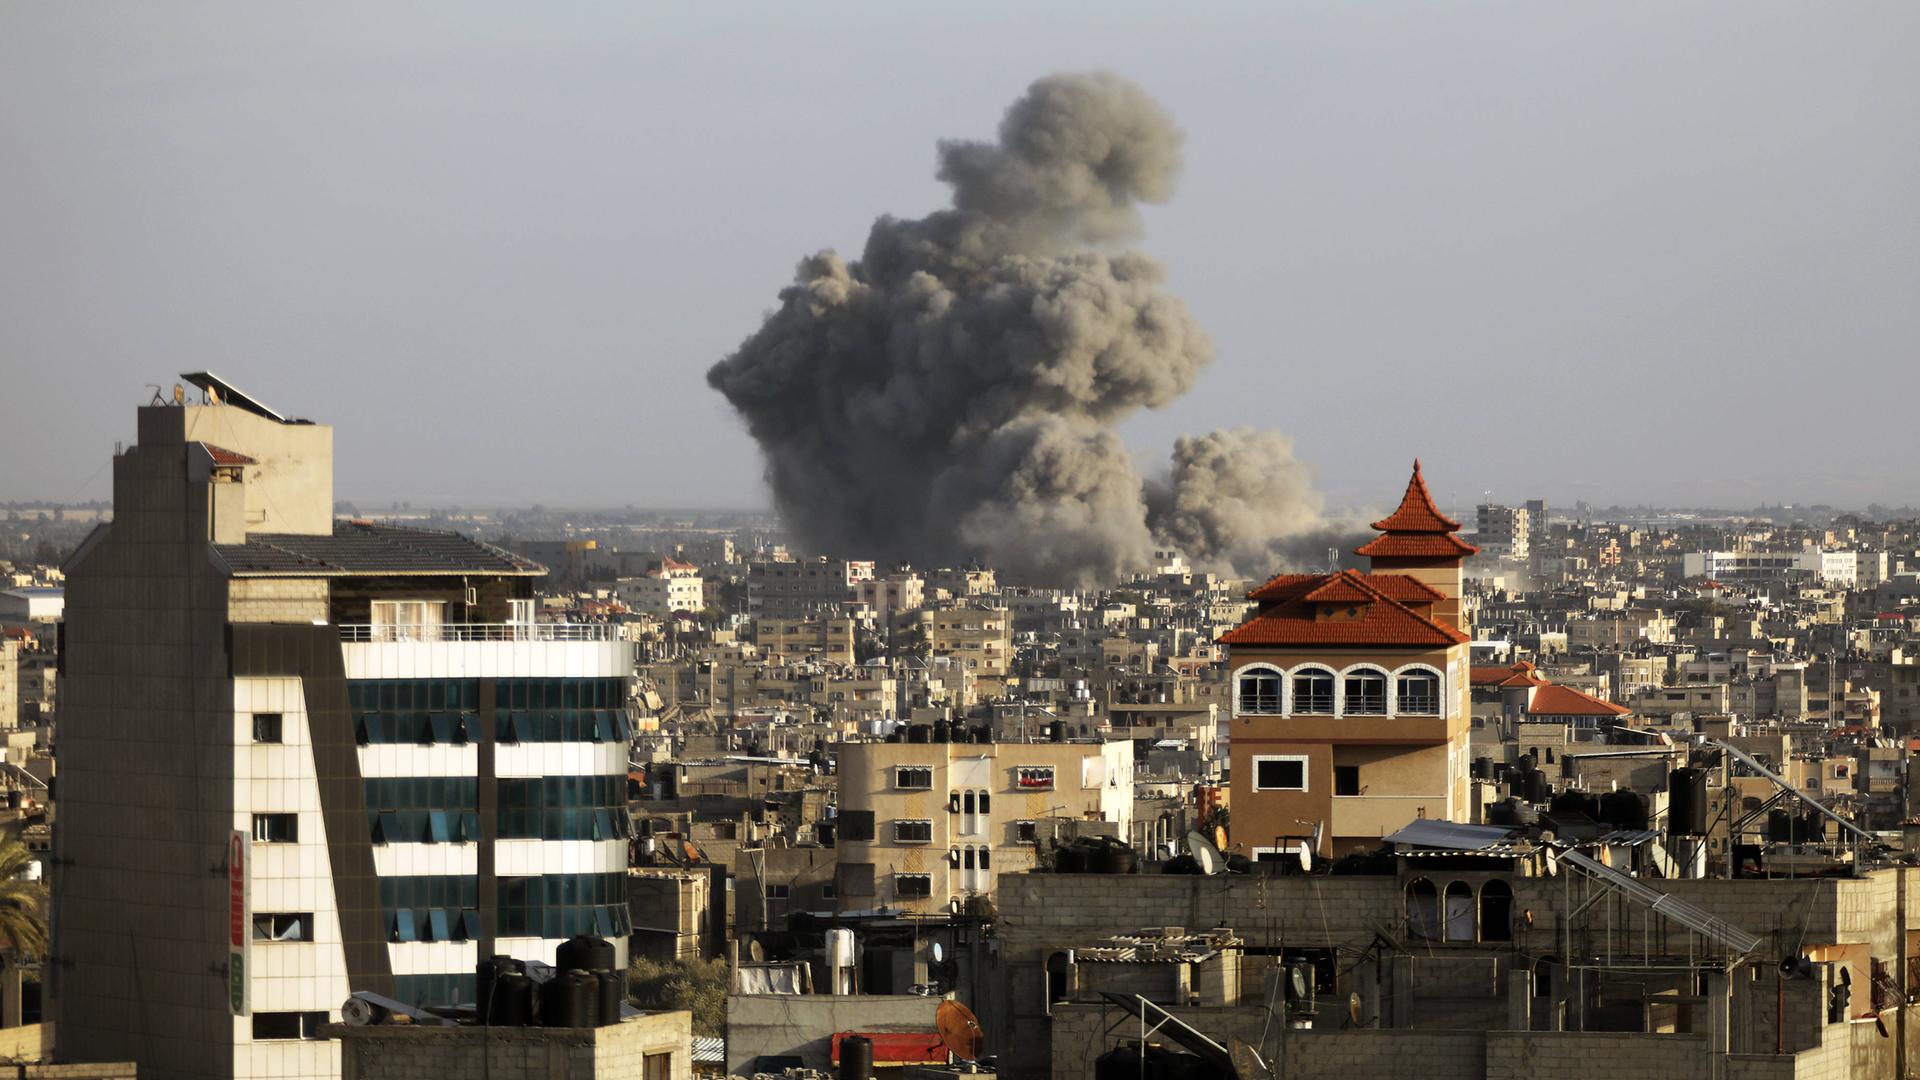 Israelischer Luftangriff auf die Stadt Chan Younis im Süden des Gazastreifens.